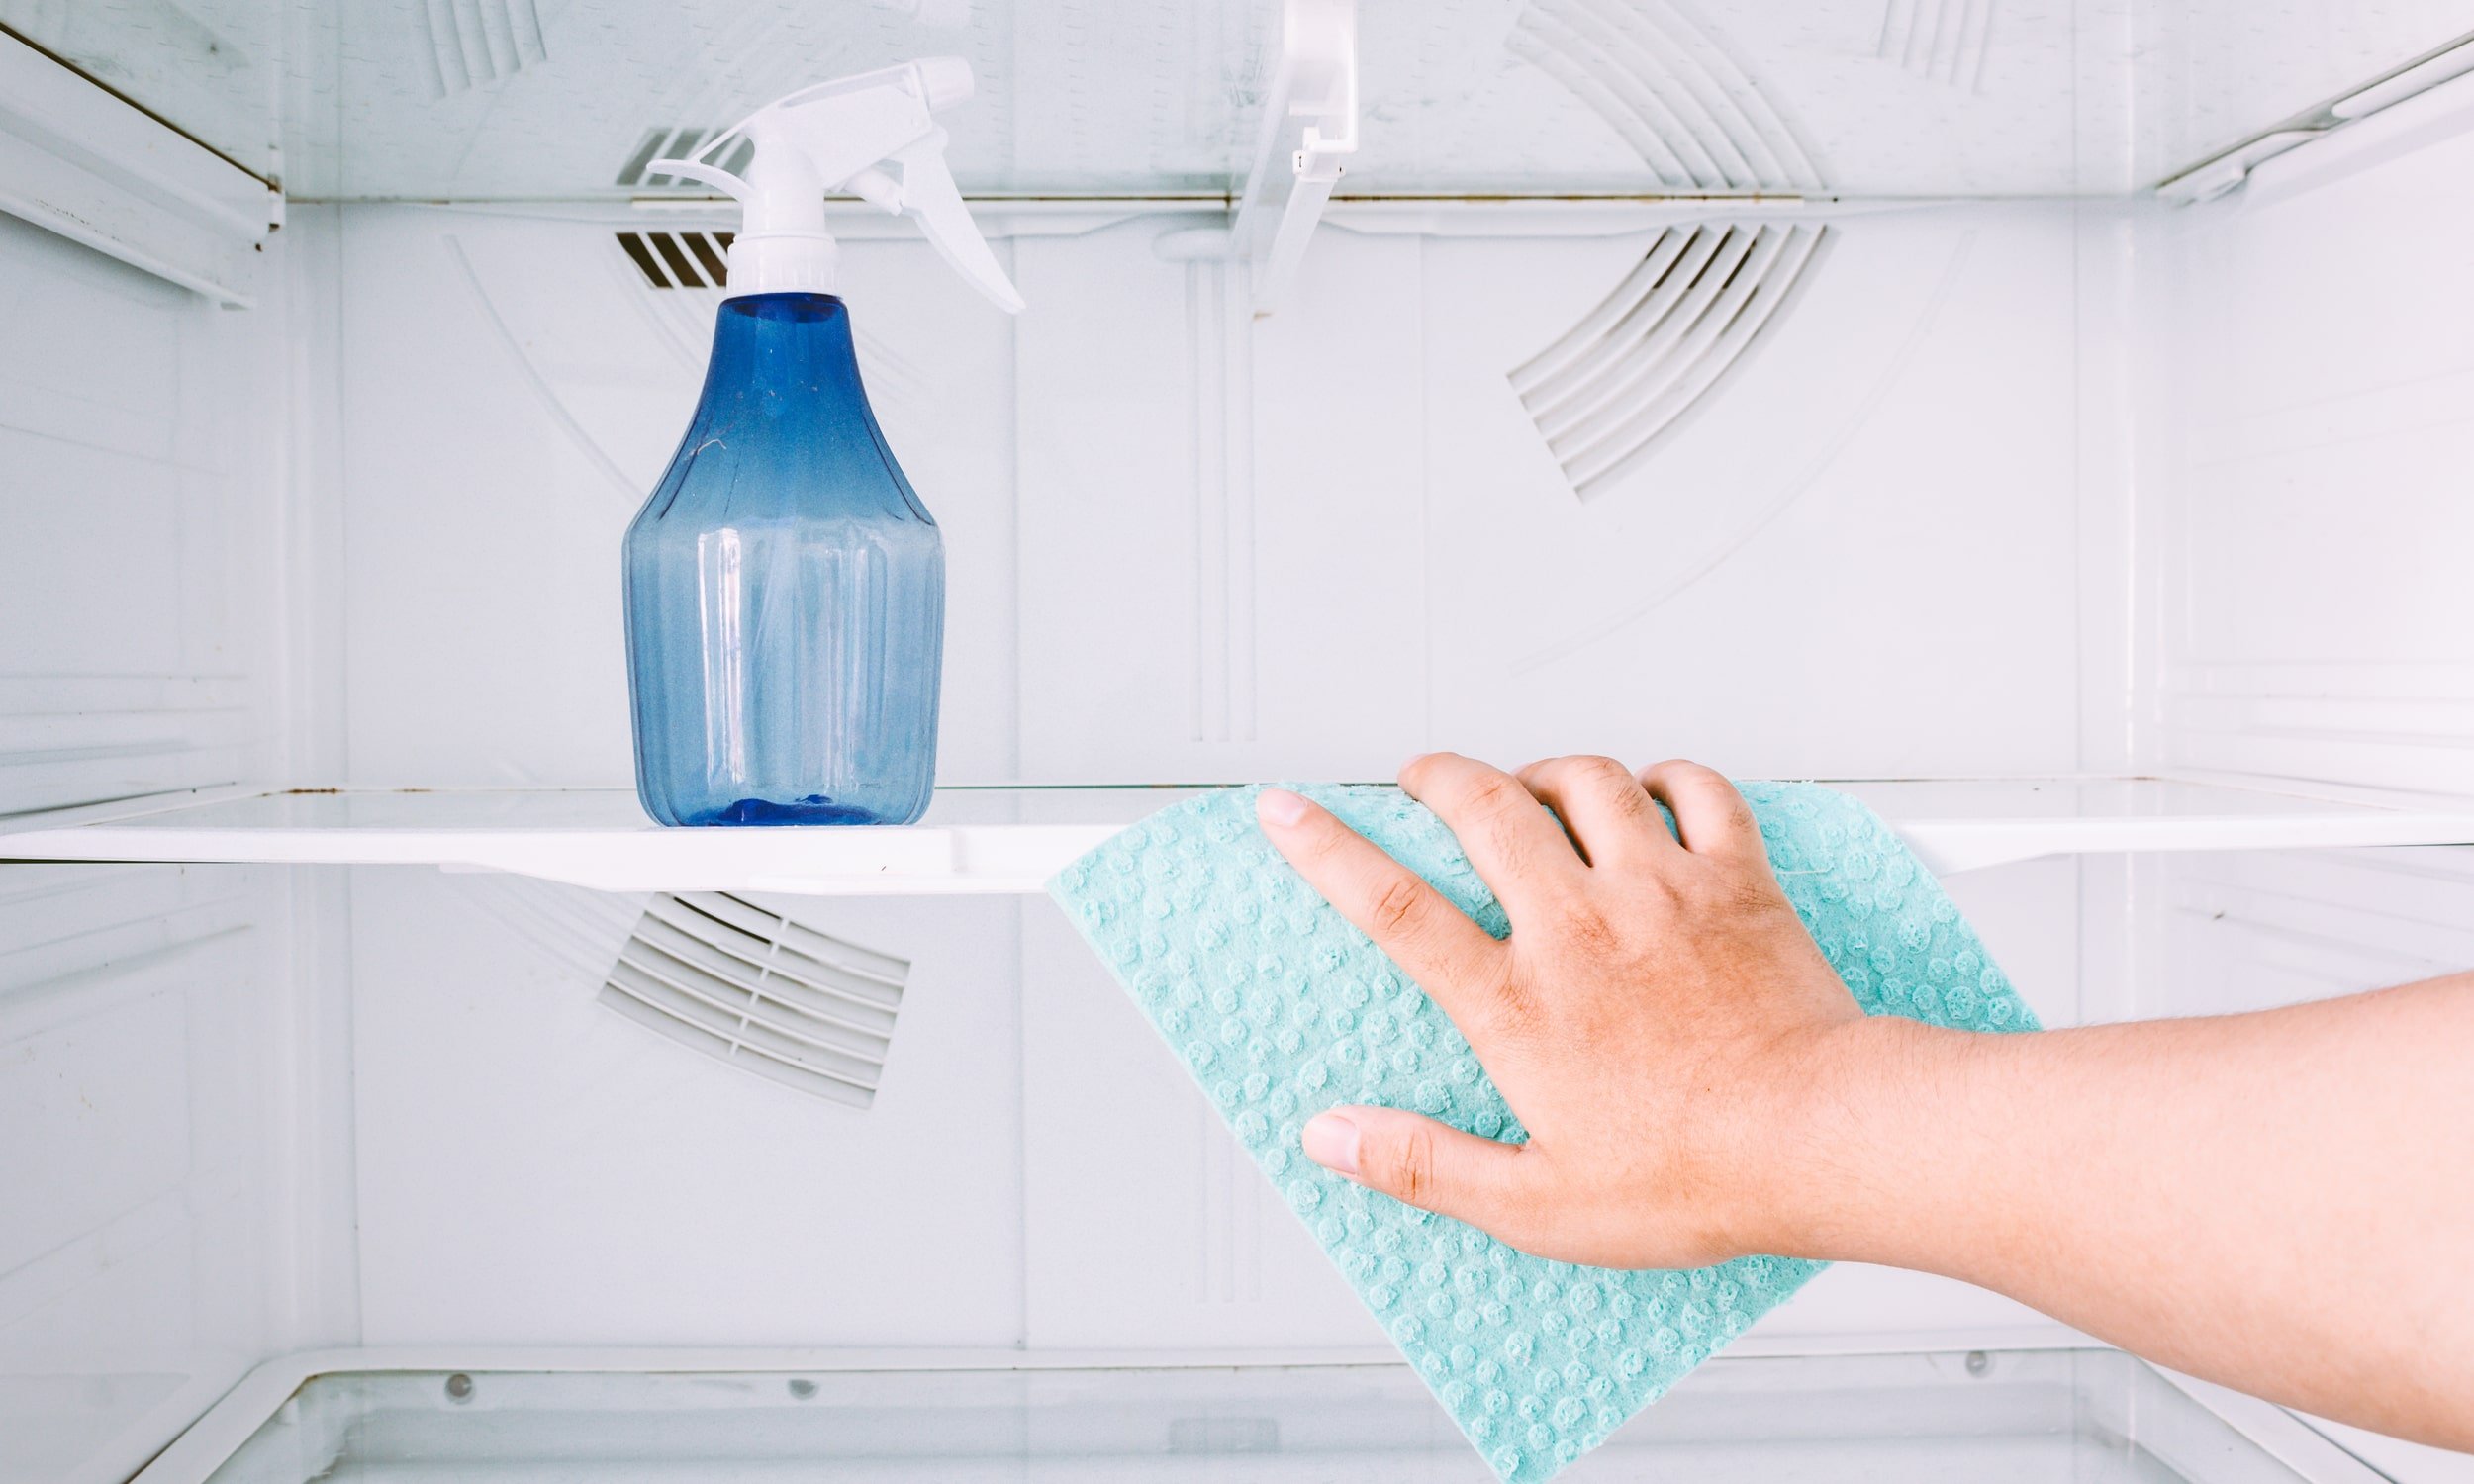 külmkapi puhastamine lapi ja spetsiaalsete puhastusvahenditega